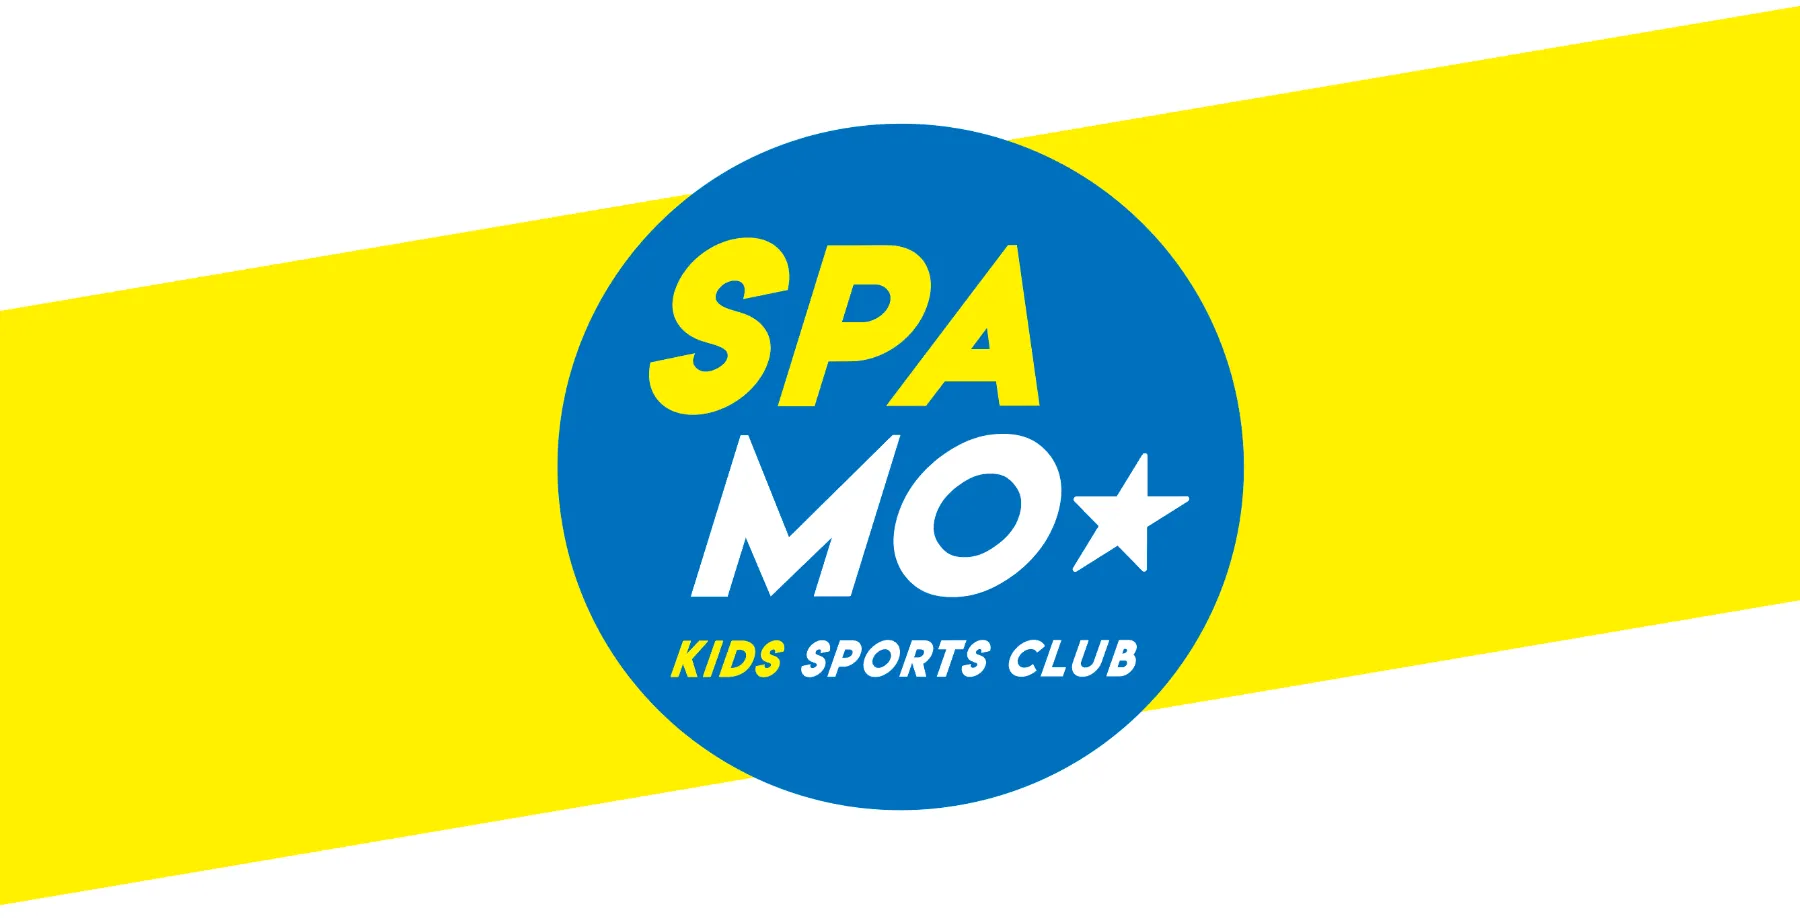 SPAMO★ KIDS SPORTS CLUB